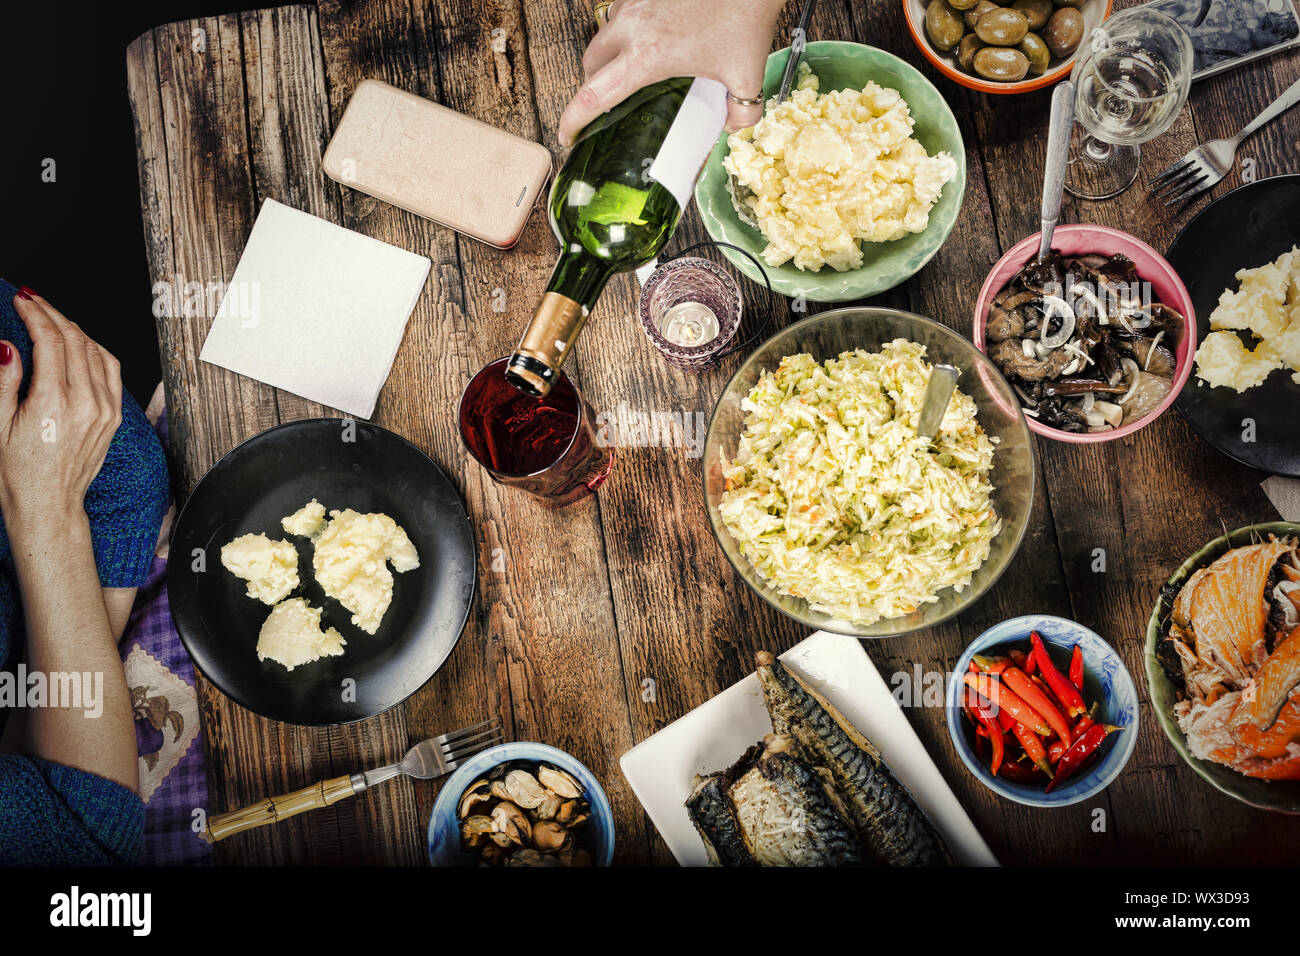 La cena de Acción de Gracias, verter el vino, eventos familiares, juntos, Foto de stock